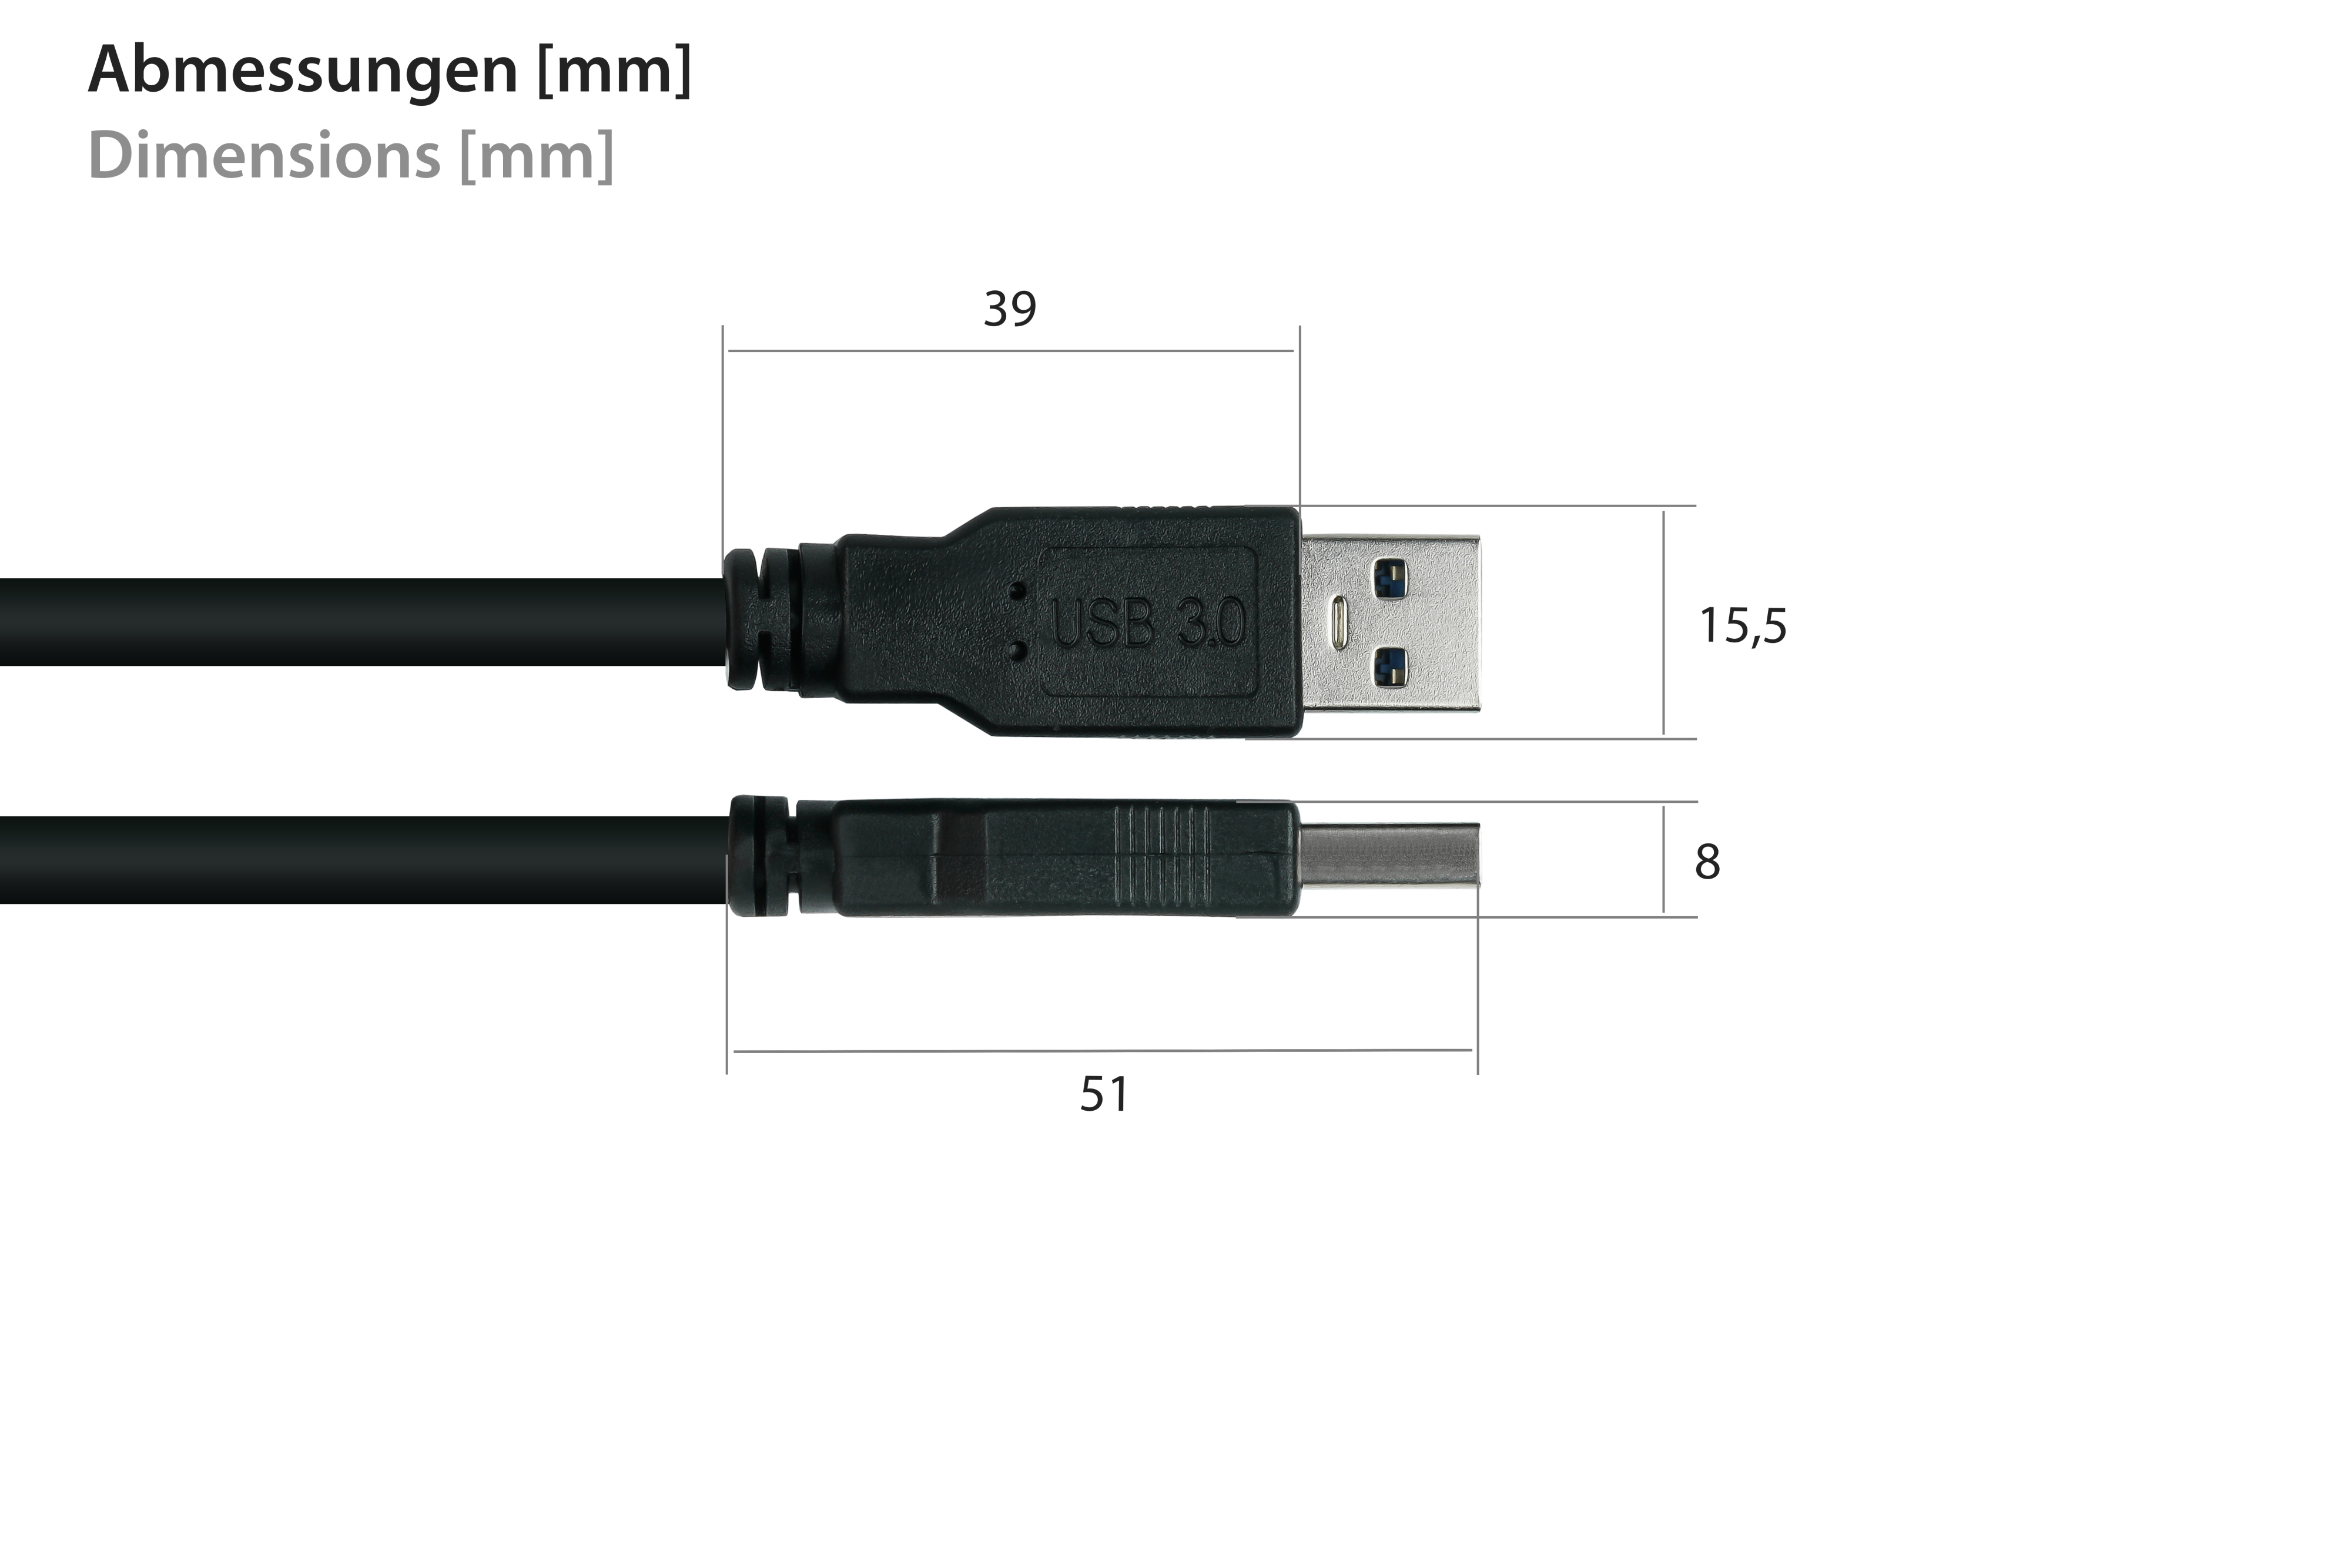 AWG24, AWG28 an Einbau-Verlängerung Buchse / 3.0 UL, A A,Premium, KUPFER, USB Stecker schwarz KABELMEISTER